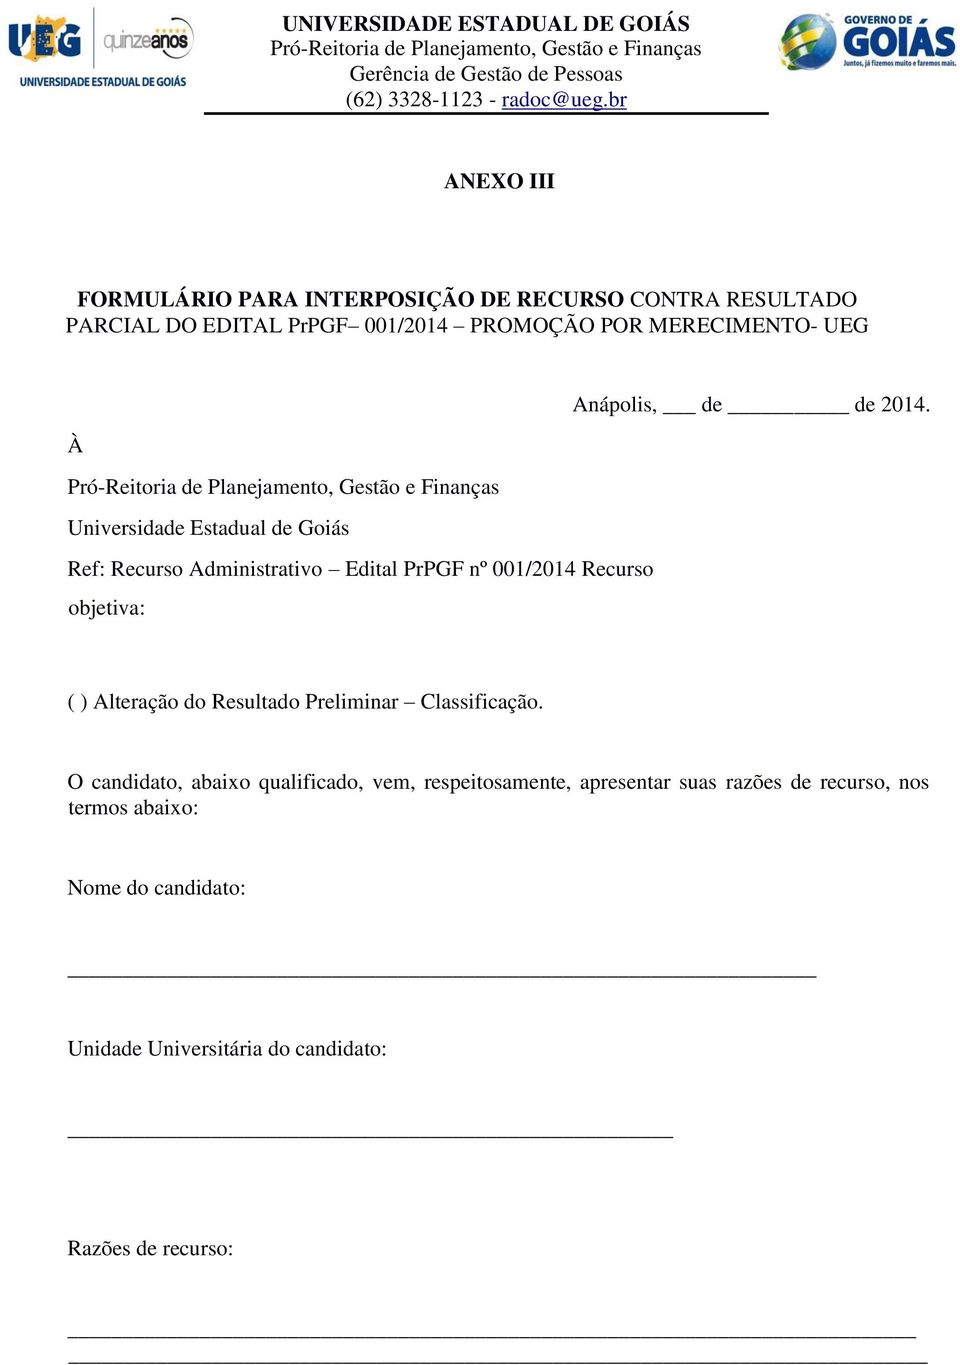 À Pró-Reitoria de Planejamento, Gestão e Finanças Universidade Estadual de Goiás Ref: Recurso Administrativo Edital PrPGF nº 001/2014